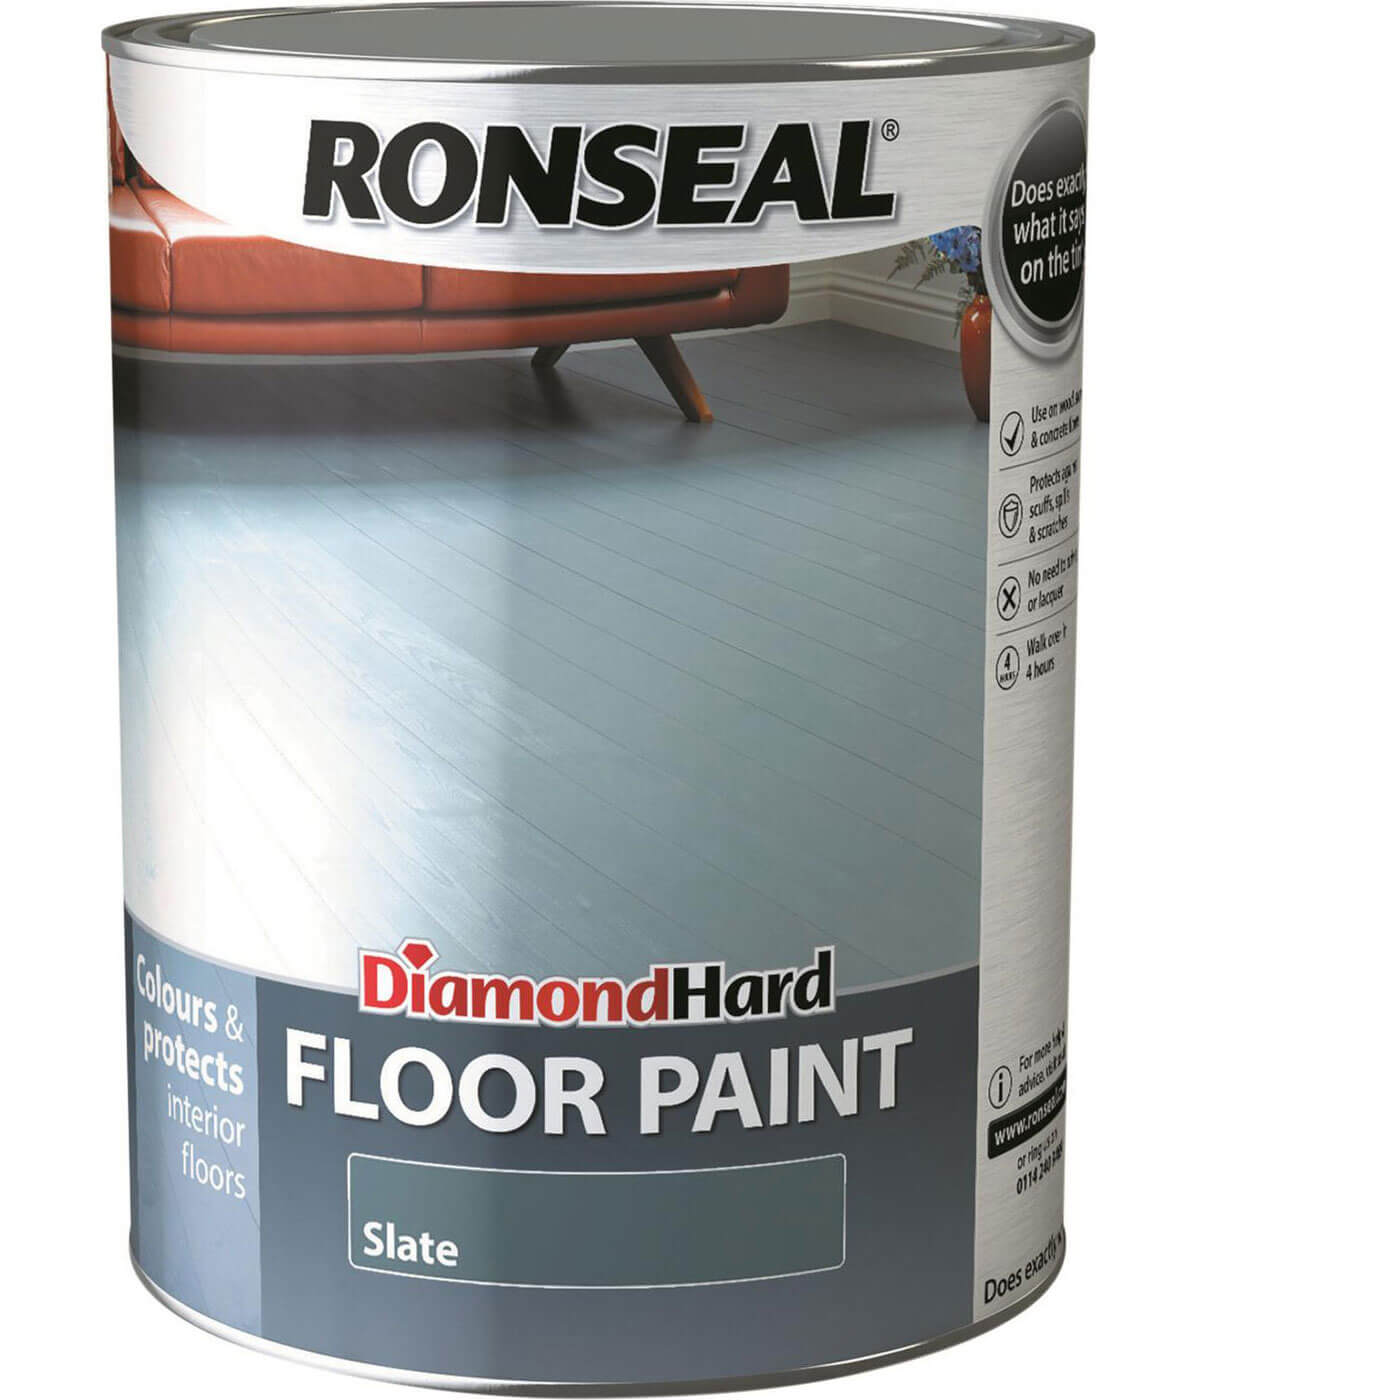 Image of Ronseal Diamond Hard Floor Paint Slate 5l